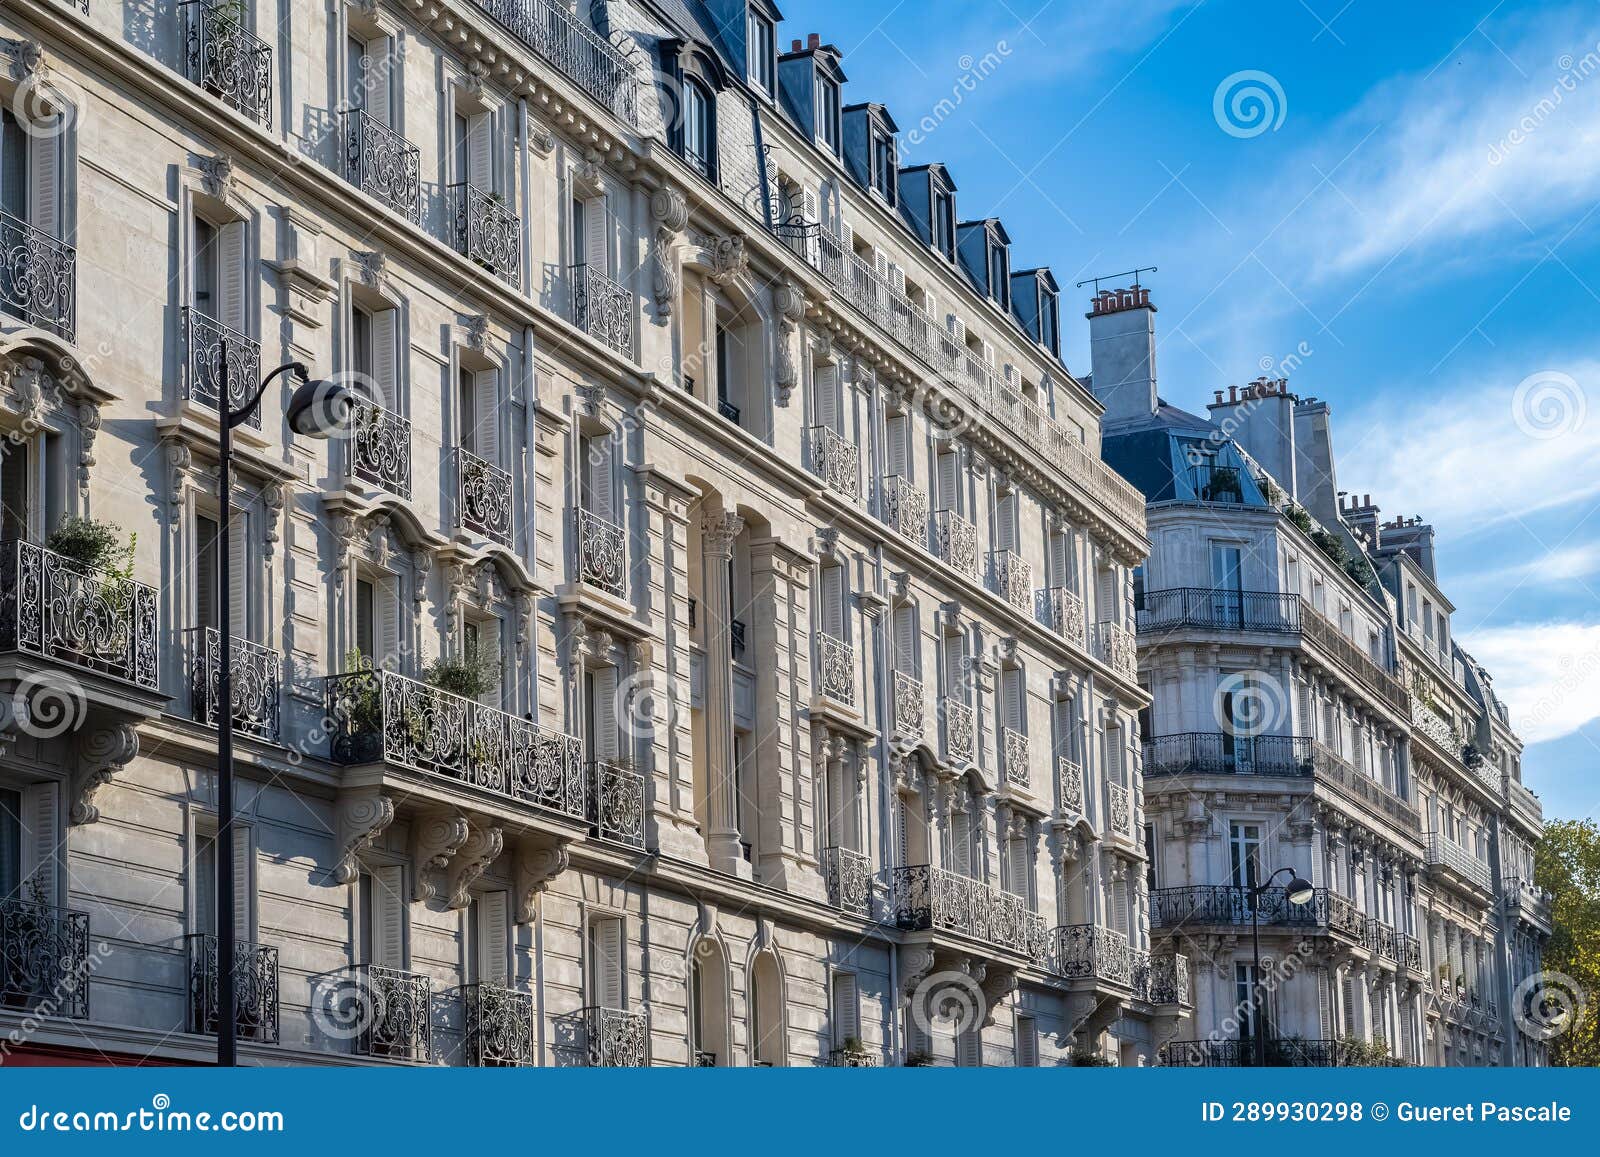 paris, beautiful facade rue de solferino